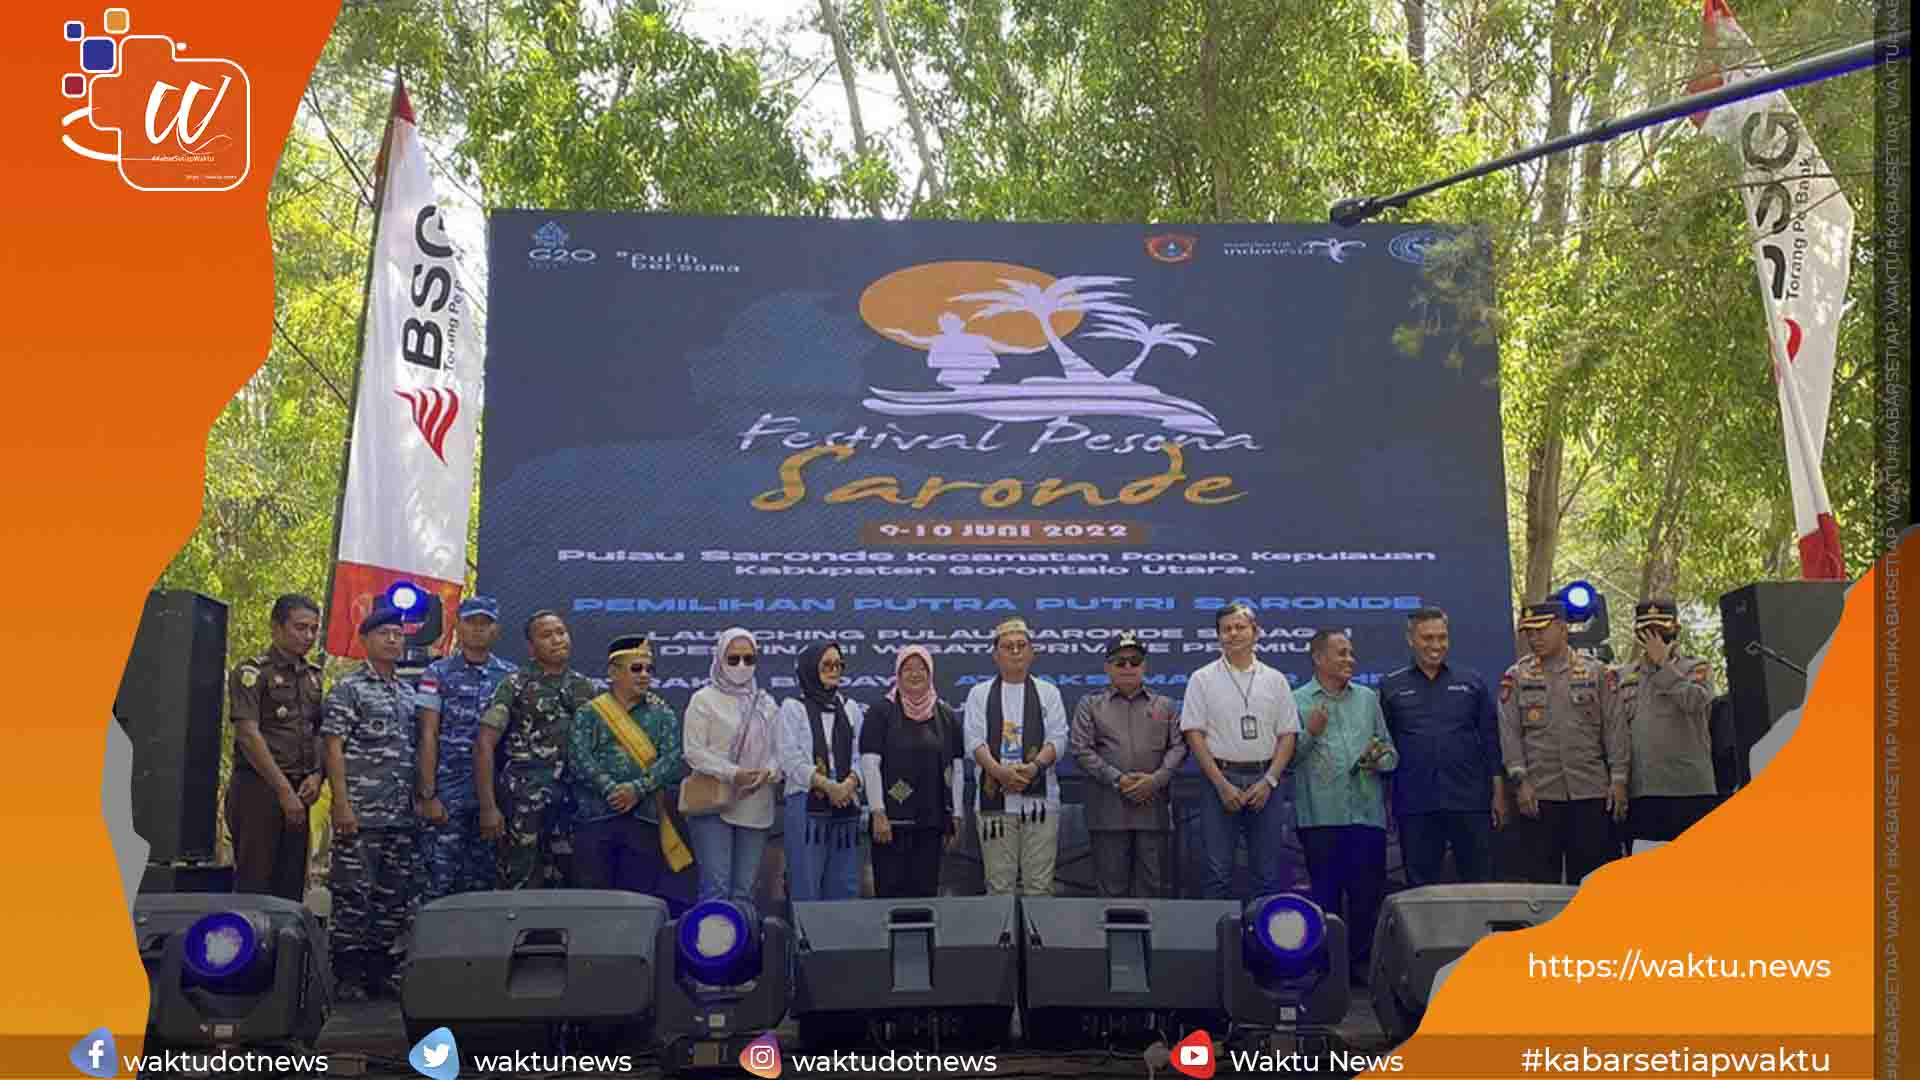 Festival Pesona Pulau Saronde 2022